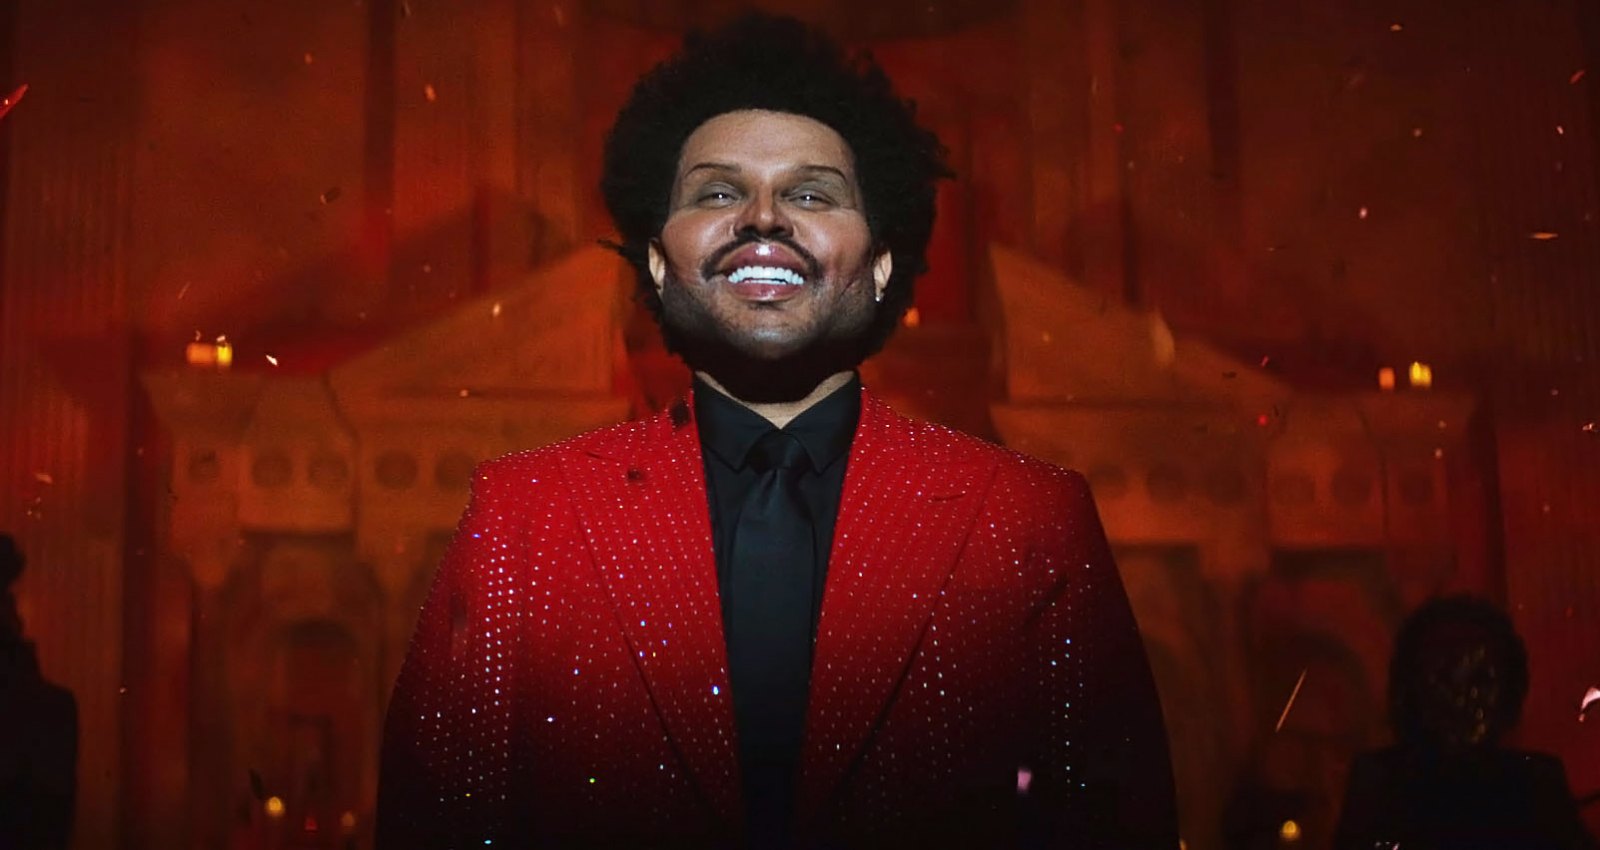 11 млн просмотров 2 года назад. The Weeknd 2021. The Weeknd певец 2021. The Weeknd фото 2021. The Weeknd 2021 пластика.